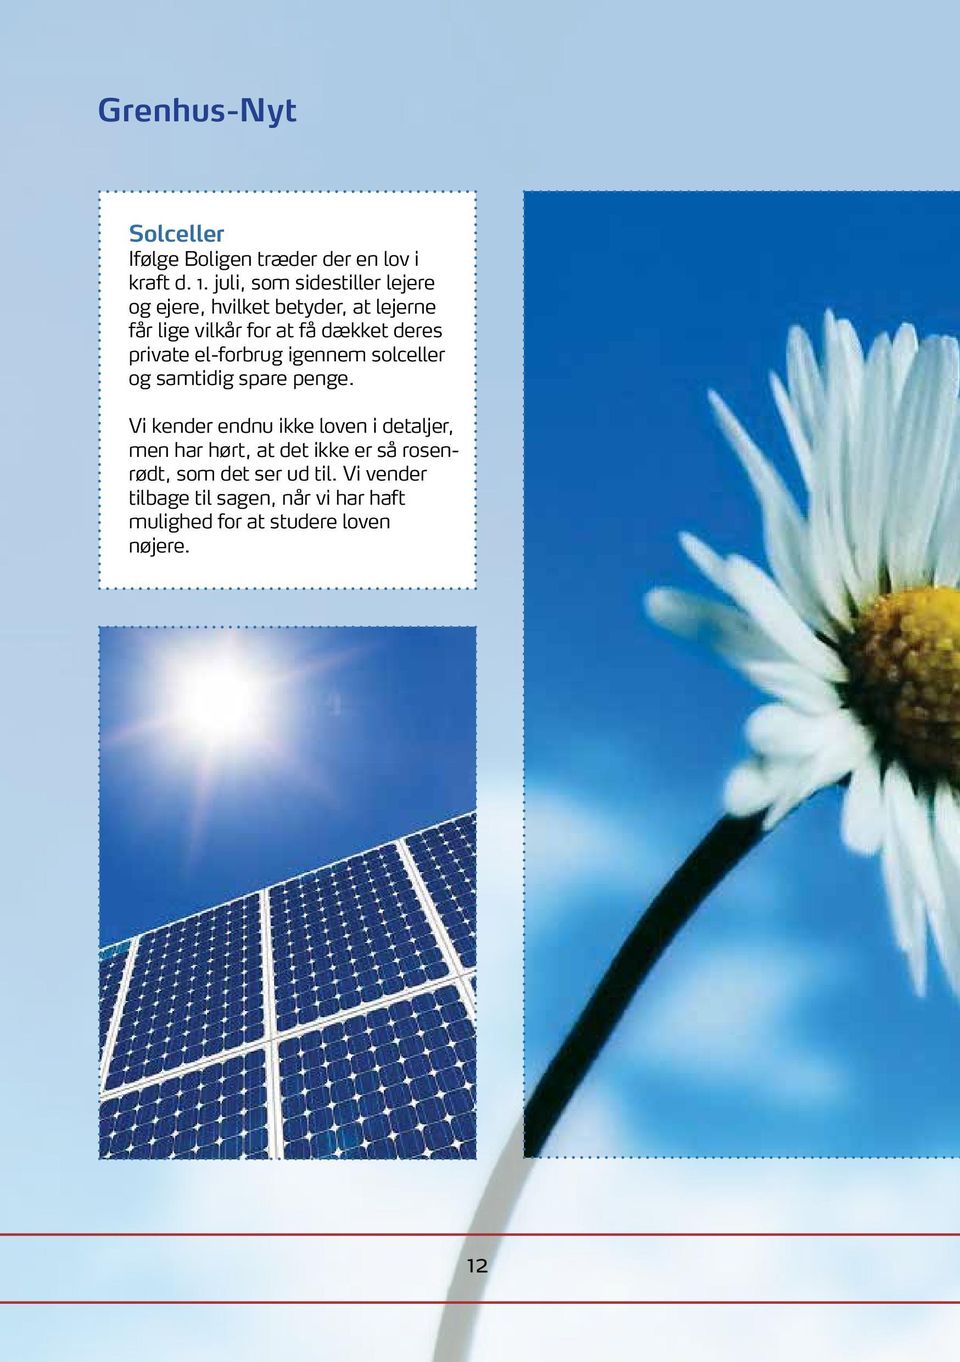 private el-forbrug igennem solceller og samtidig spare penge.